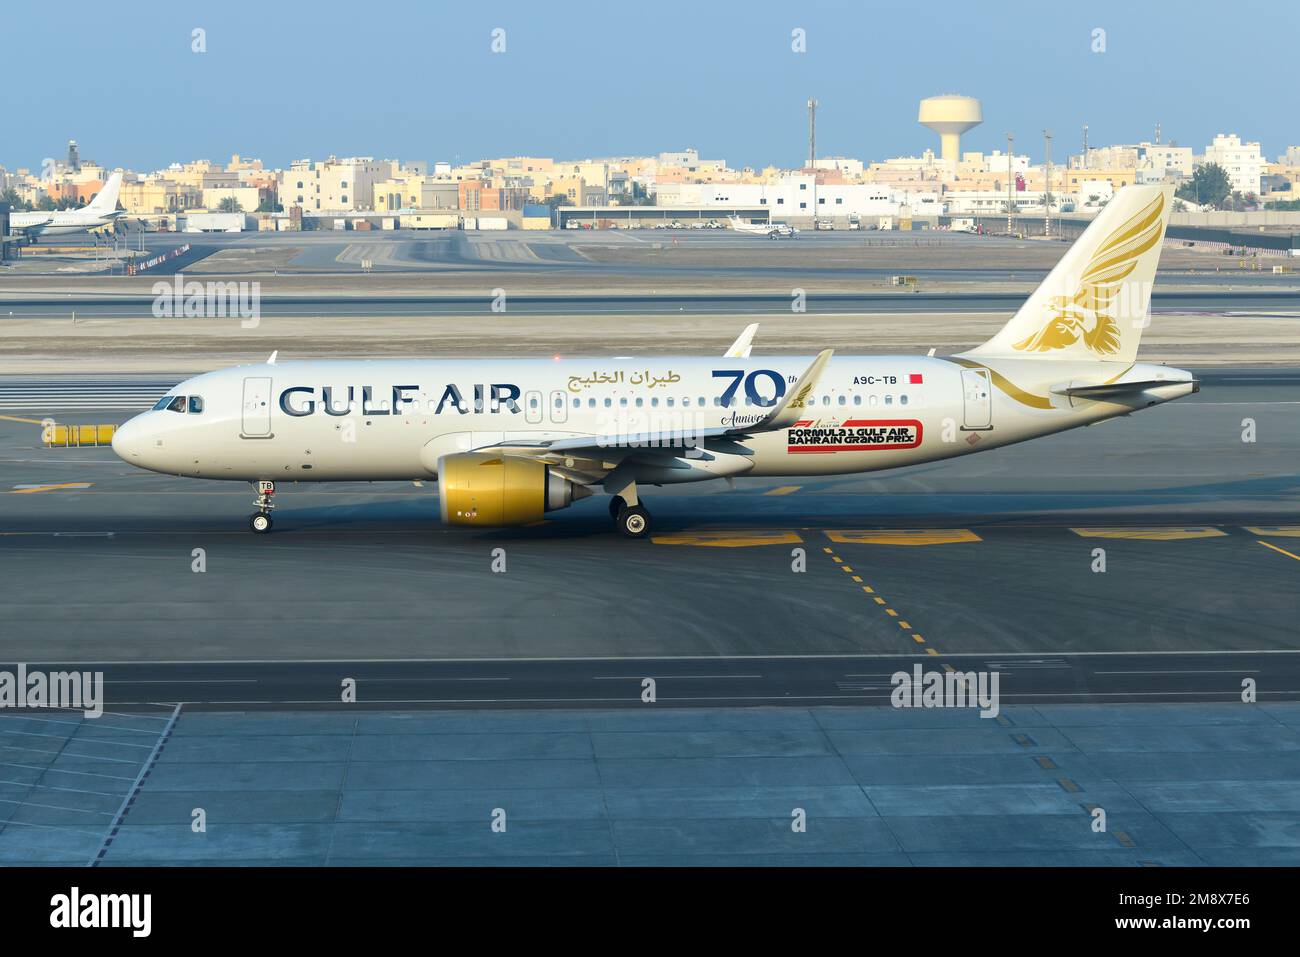 Gulf Air Airbus A320neo en train de rouler à l'aéroport de Bahreïn. L'avion A320 de Gulfair, surtout connu comme compagnie aérienne Gulf Air. Banque D'Images